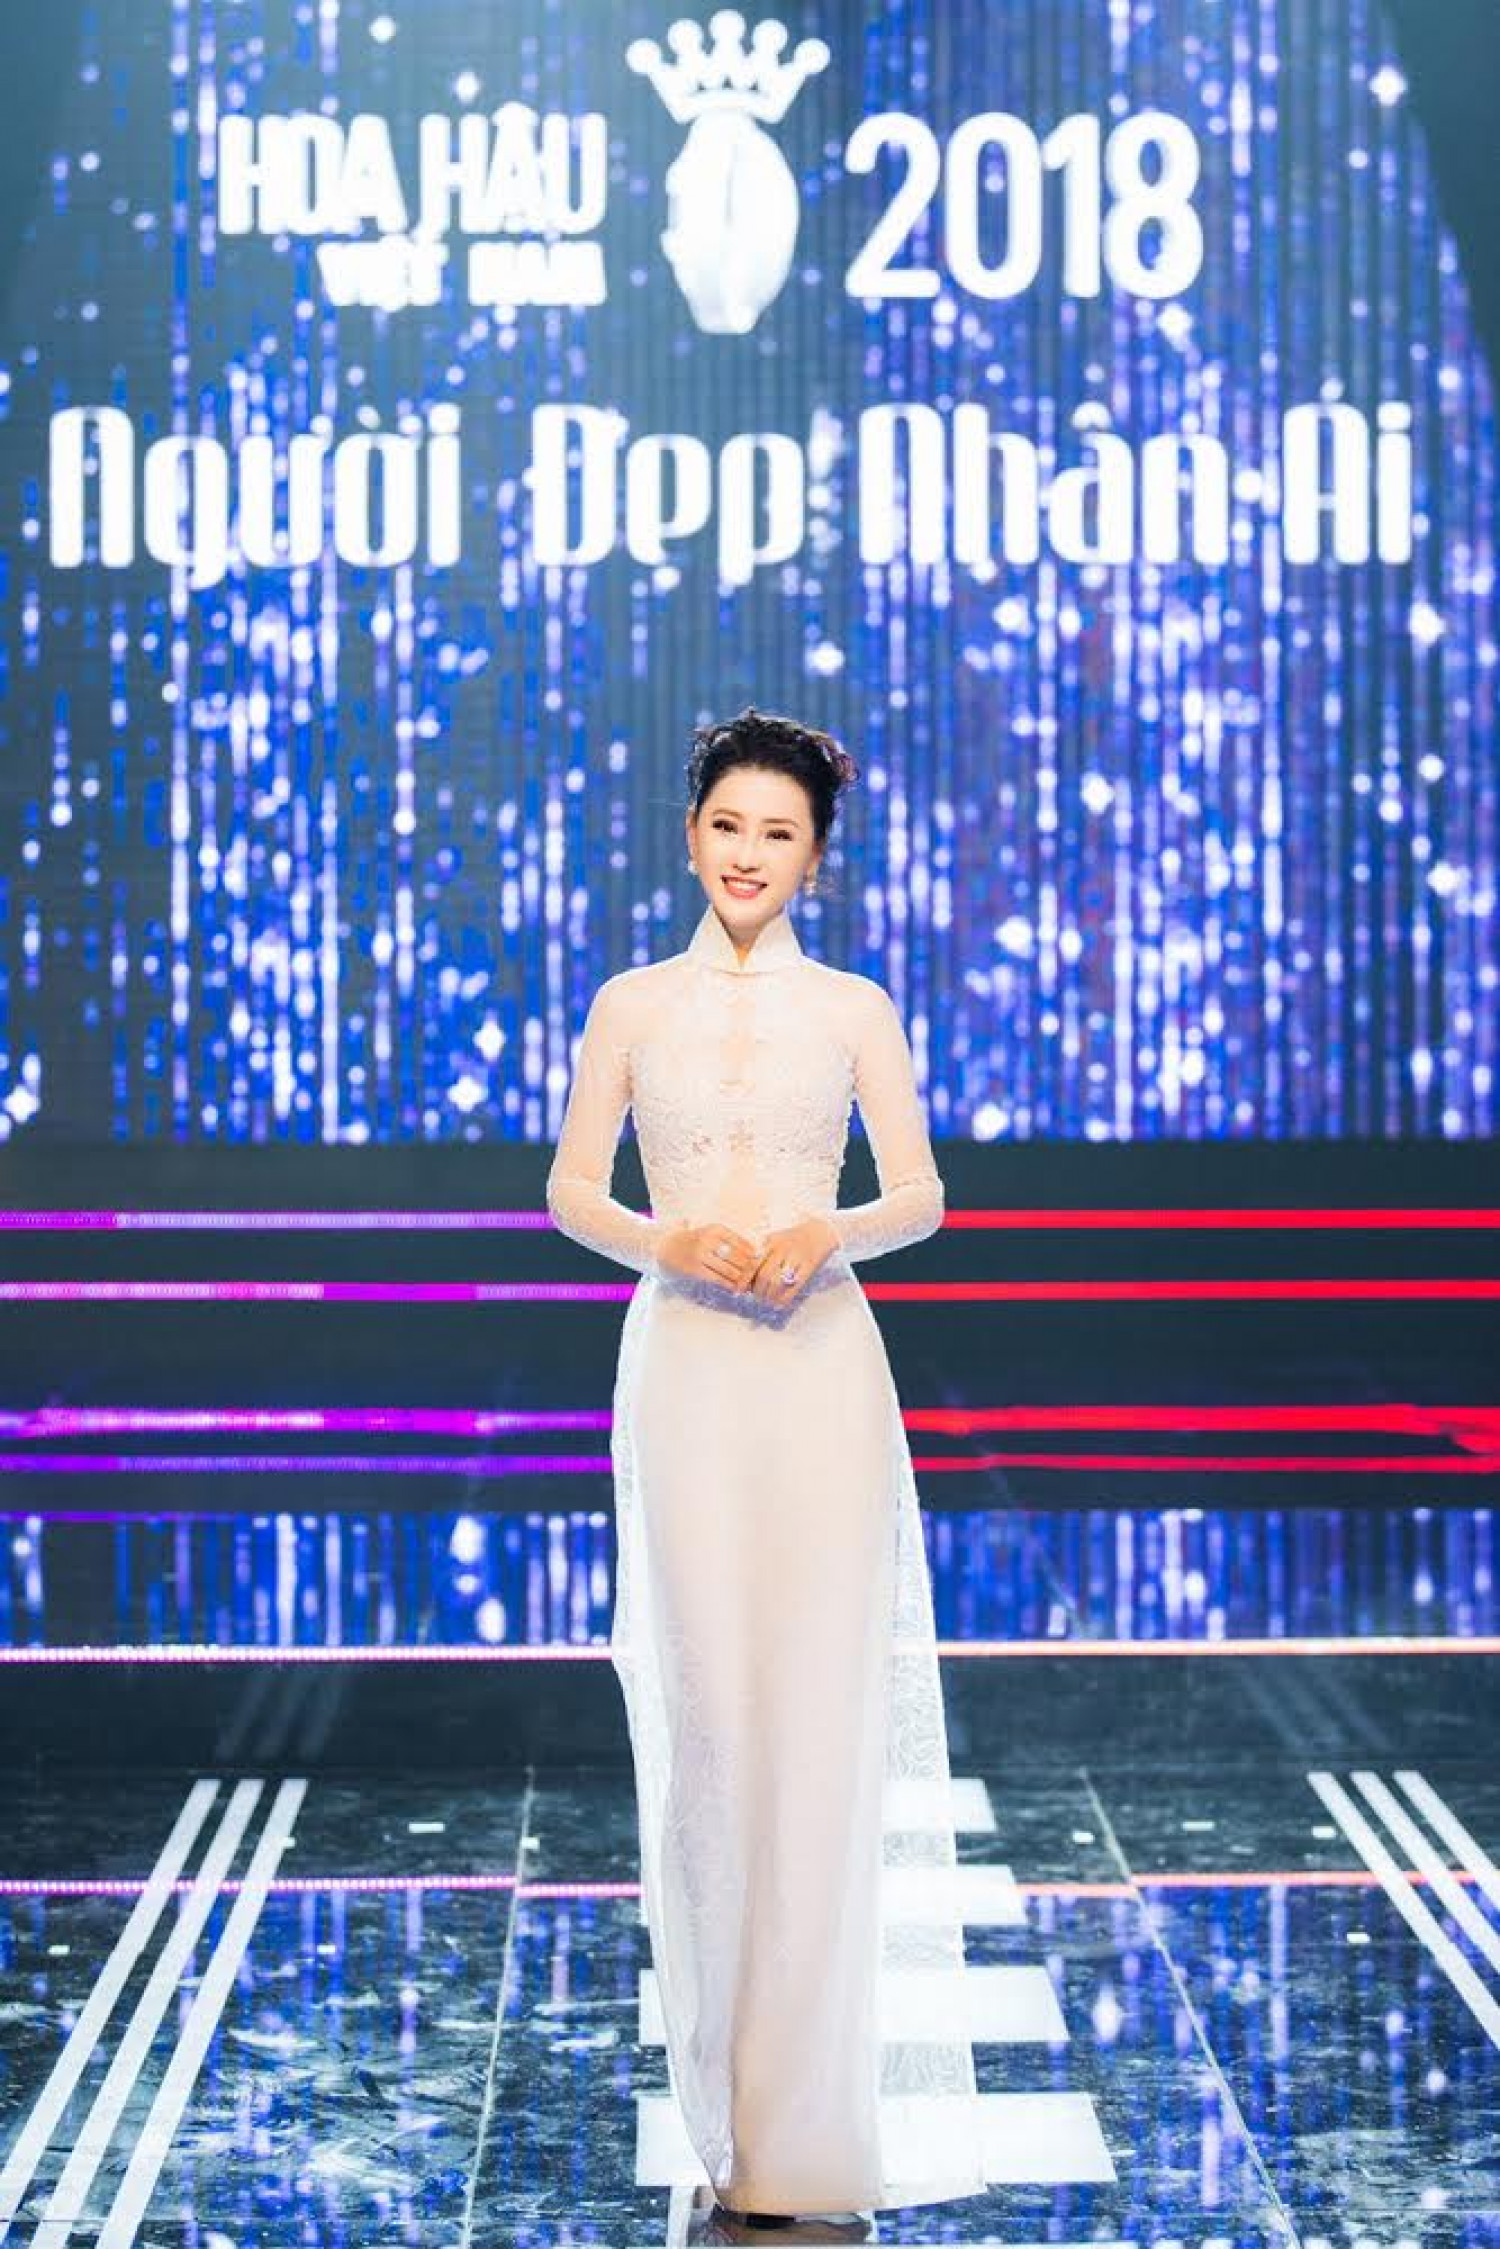 Diện chiếc áo dài trắng pha ren tinh tế, thanh lịch, trông Thái Như Ngọc không khác gì một thí sinh tại Hoa hậu Việt Nam 2018.